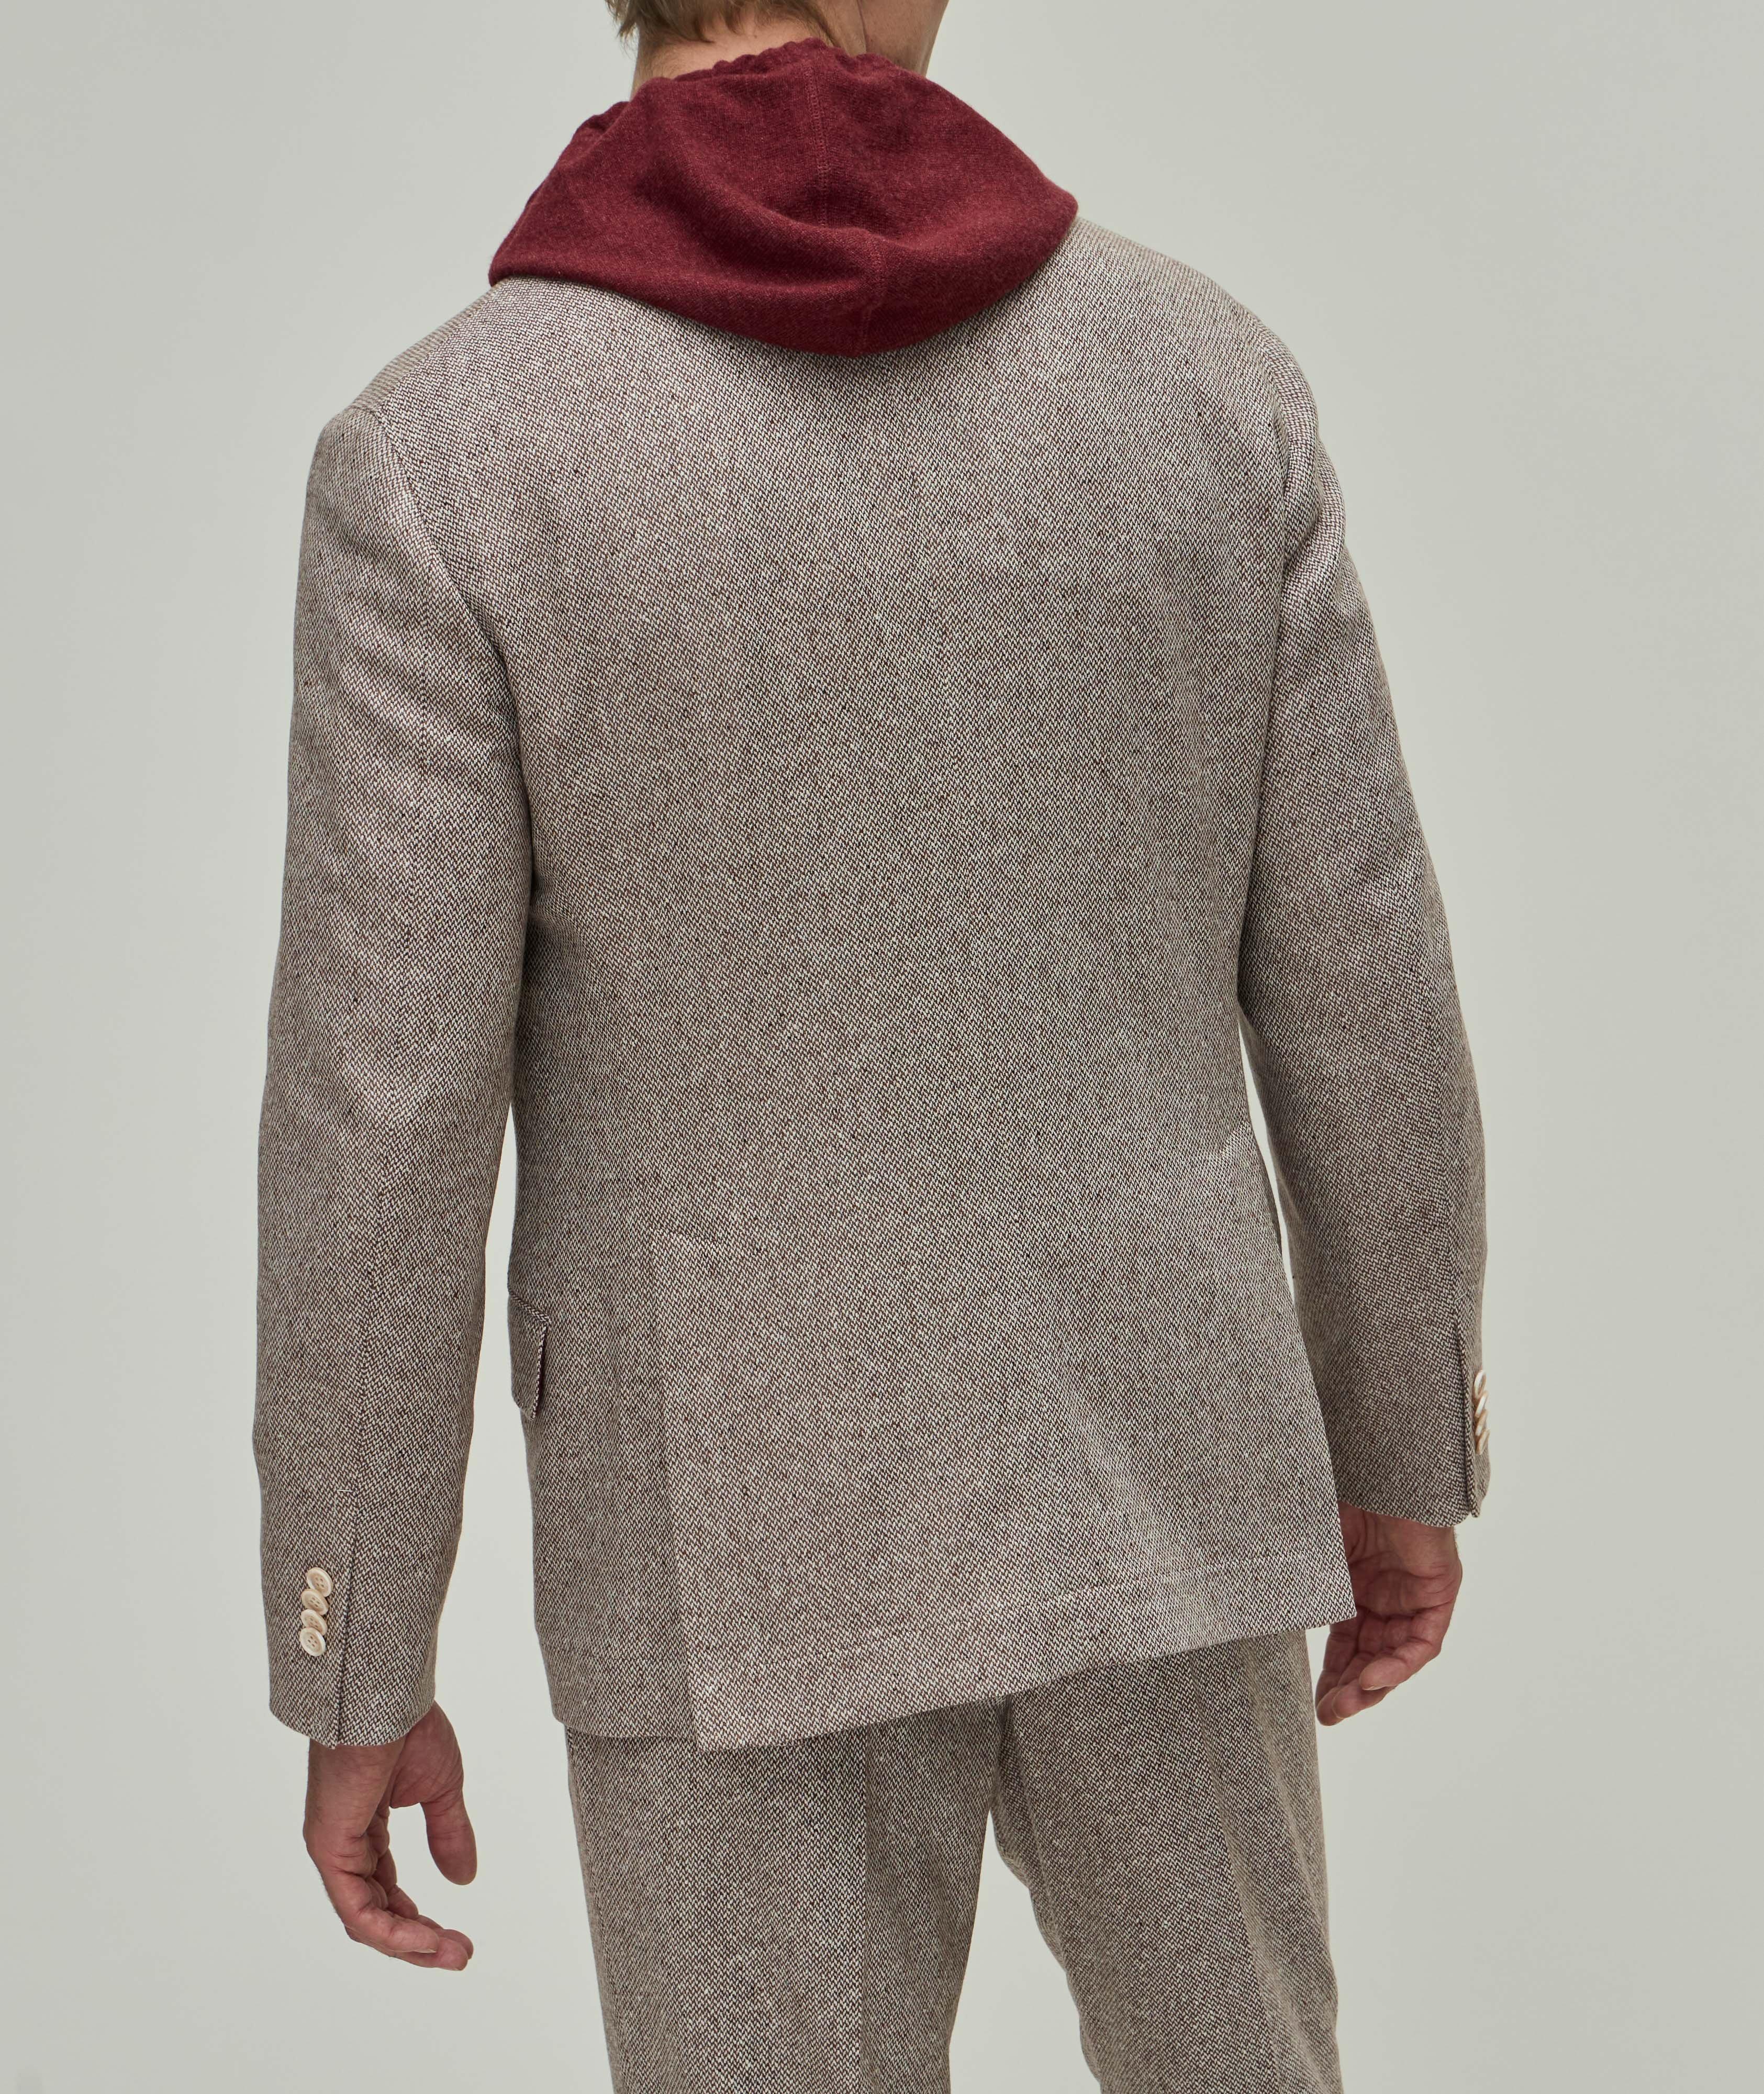 Veston Cavallo en tweed de laine vierge et de cachemire image 2